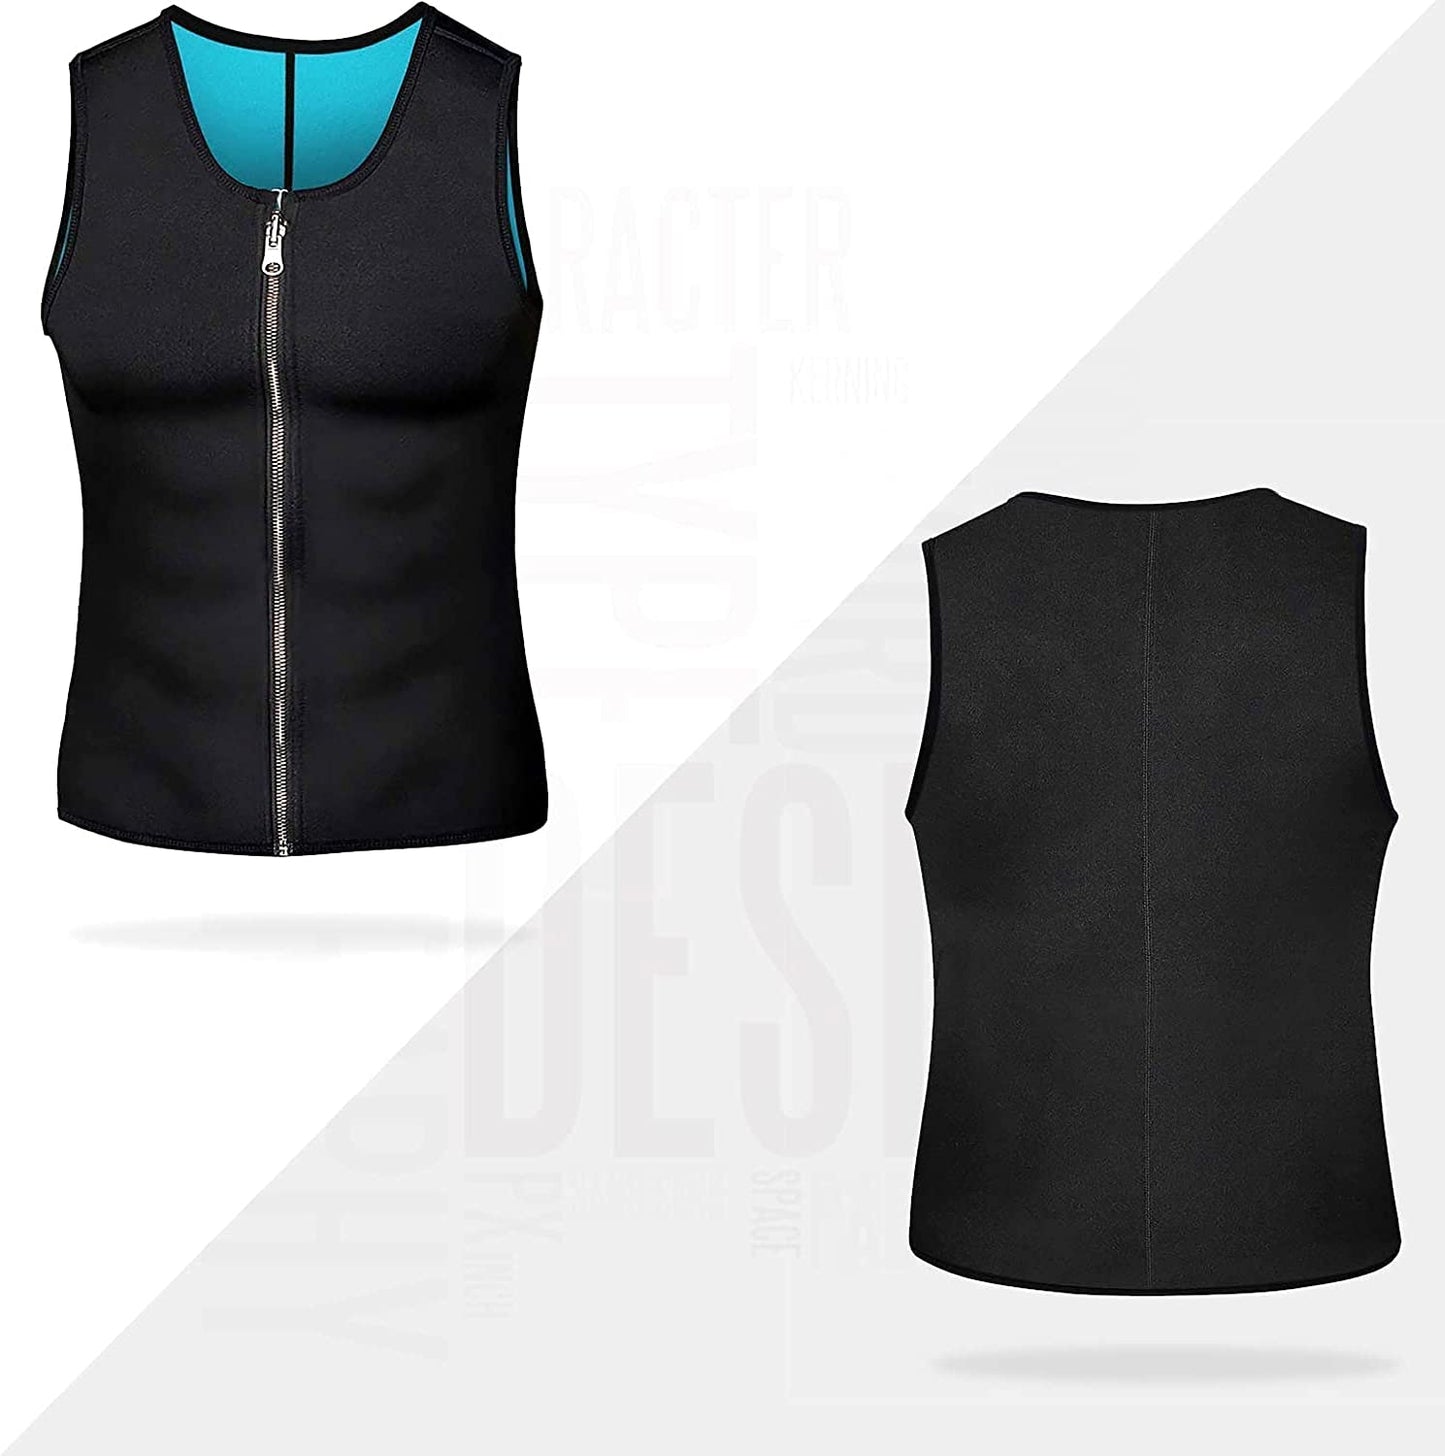 Men's Sauna Vest: Heat-Inducing Waist Trainer Corset - Neoprene Tank Top for Shapewear, Slimming & Workout